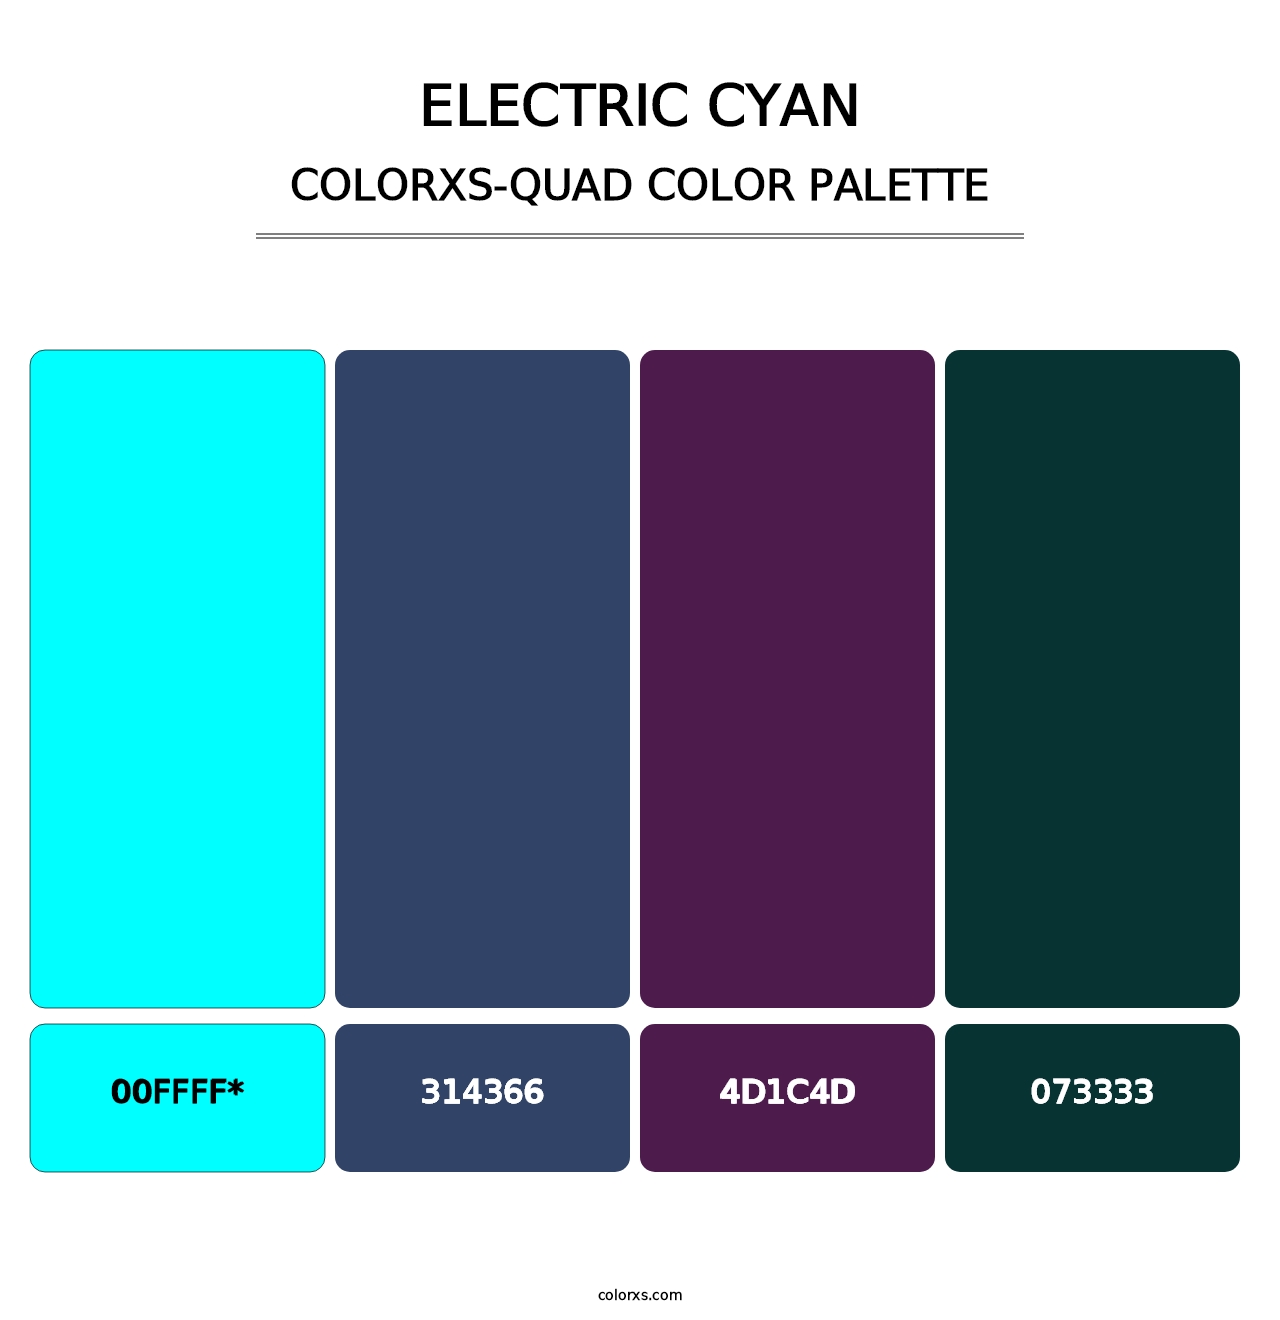 Electric Cyan - Colorxs Quad Palette